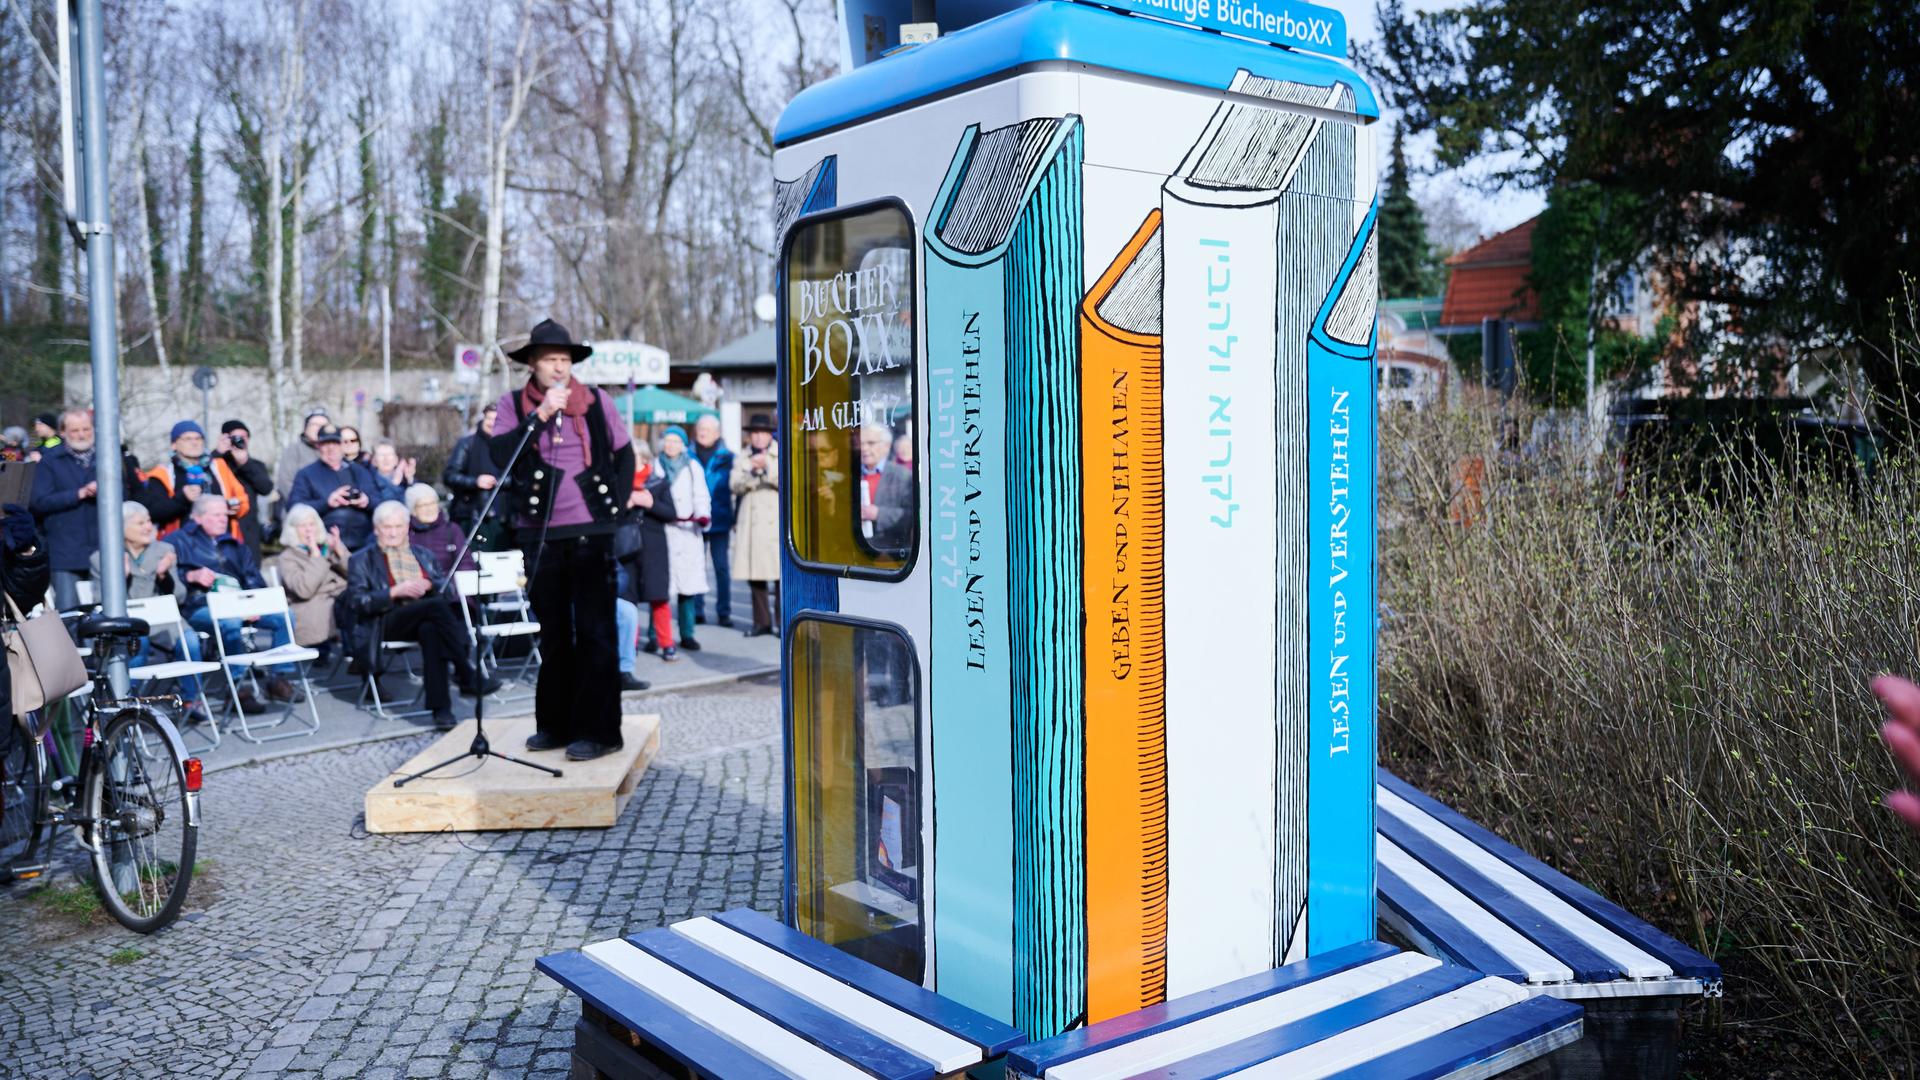 Eine bemalte Telefonzelle steht auf einem Platz. Es ist die Bücherbox am Bahnhof Berlin-Grunewald. Um die Box stehen viele Menschen. Ein Mann hält ein Mikrofon.